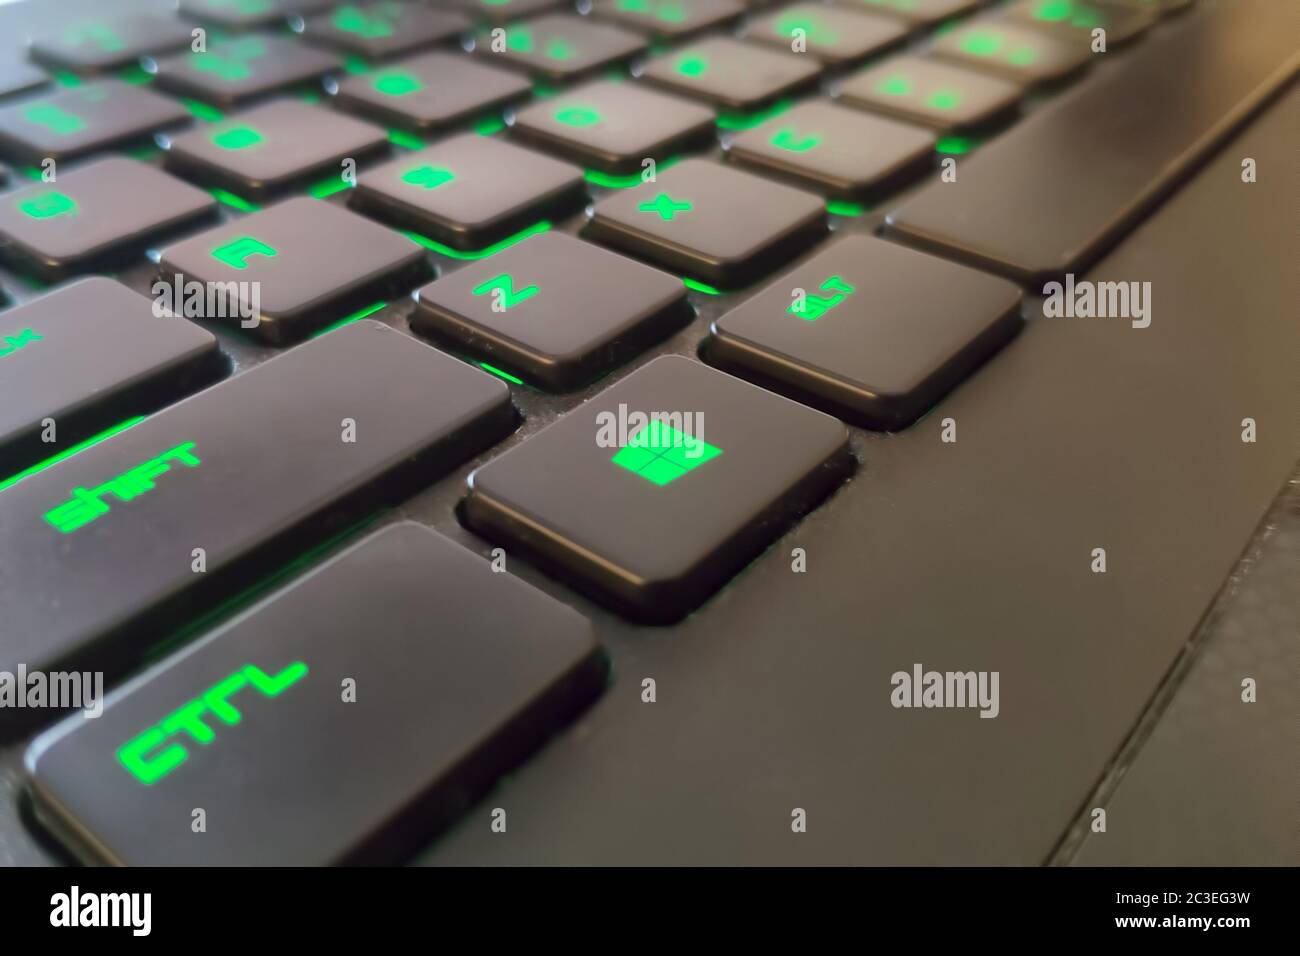 Moskau, Russland - 04. Juni 2019: Grüne Windows-Taste auf einer Tastatur  mit Beleuchtung. Nahaufnahme von Shift, Ctrl, alt Stockfotografie - Alamy